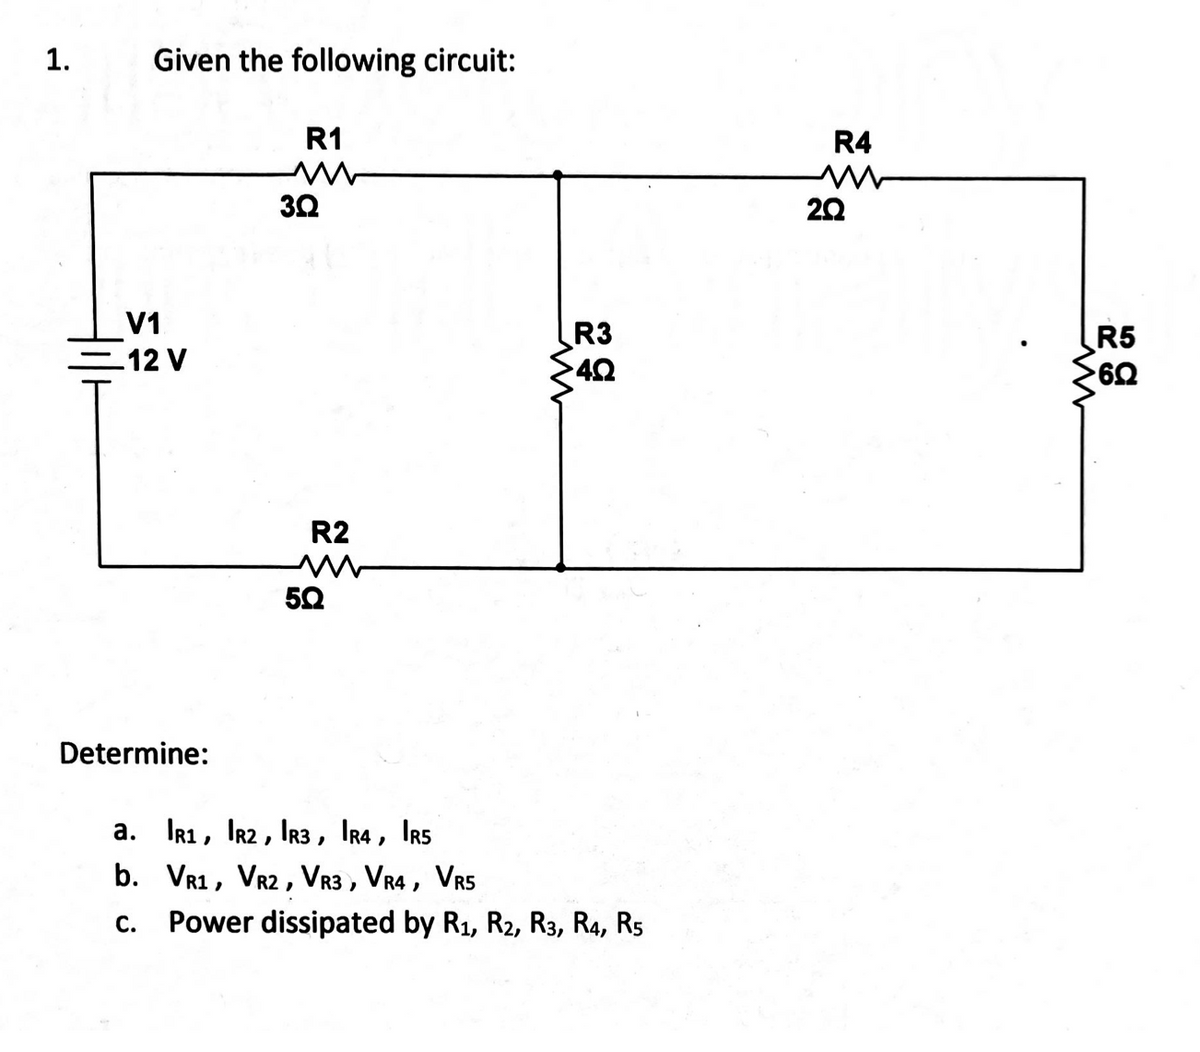 1.
Given the following circuit:
R1
3Ω
V1
12 V
R2
w
50
ww
Determine:
a. R1, R2, R3, IR4, IRS
b. VR1, VR2, VR3, VR4, VR5
C. Power dissipated by R1, R2, R3, R4, R5
R3
4Q
R4
w
20
www
R5
6Q